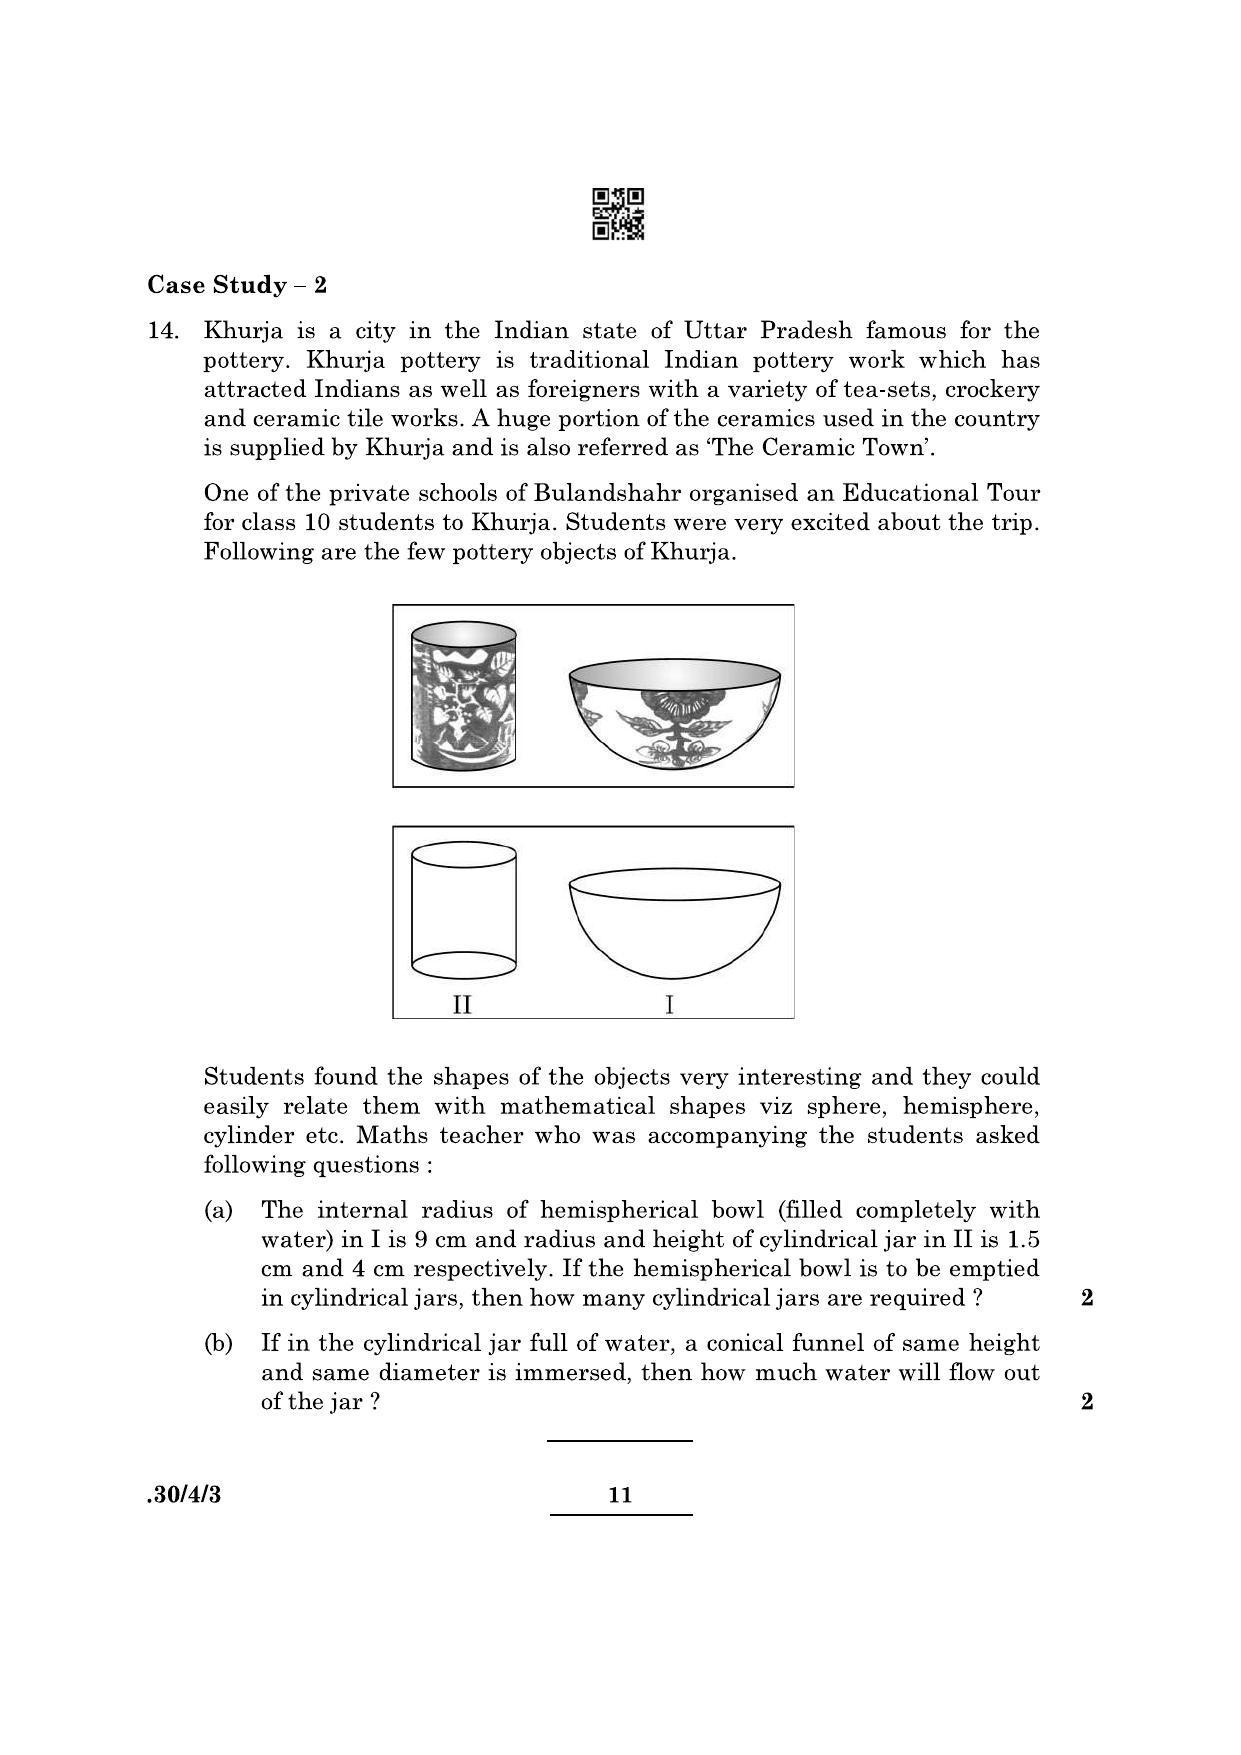 CBSE Class 10 Maths (30/4/3 - SET III) 2022 Question Paper - Page 11